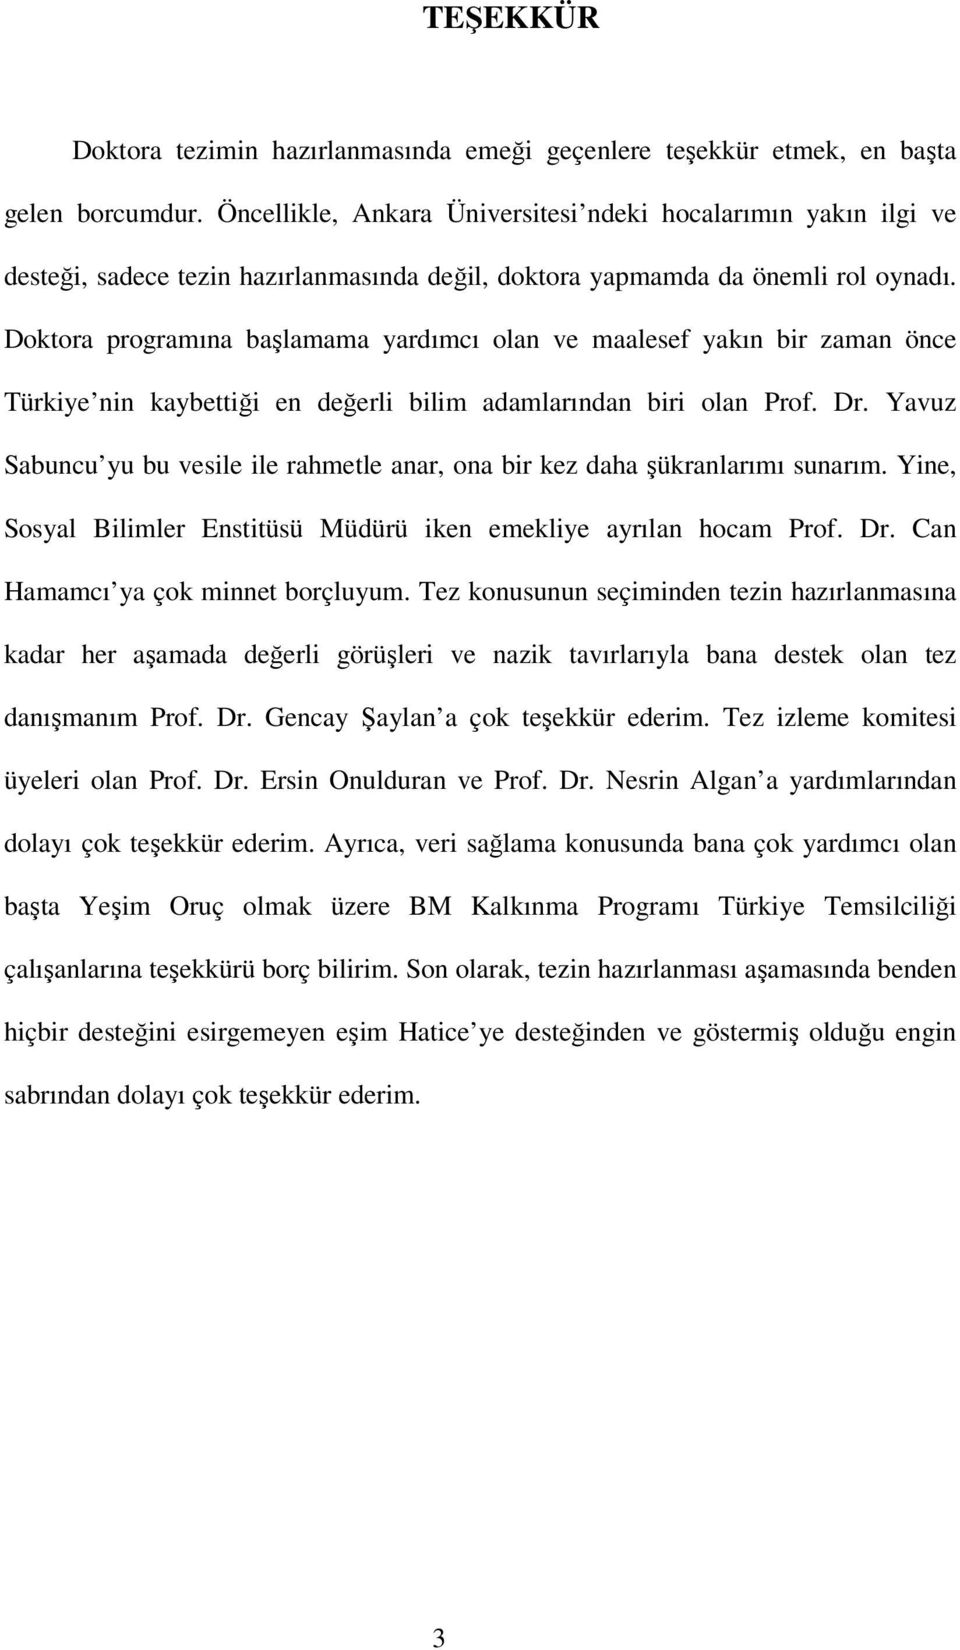 Doktora programına başlamama yardımcı olan ve maalesef yakın bir zaman önce Türkiye nin kaybettiği en değerli bilim adamlarından biri olan Prof. Dr.